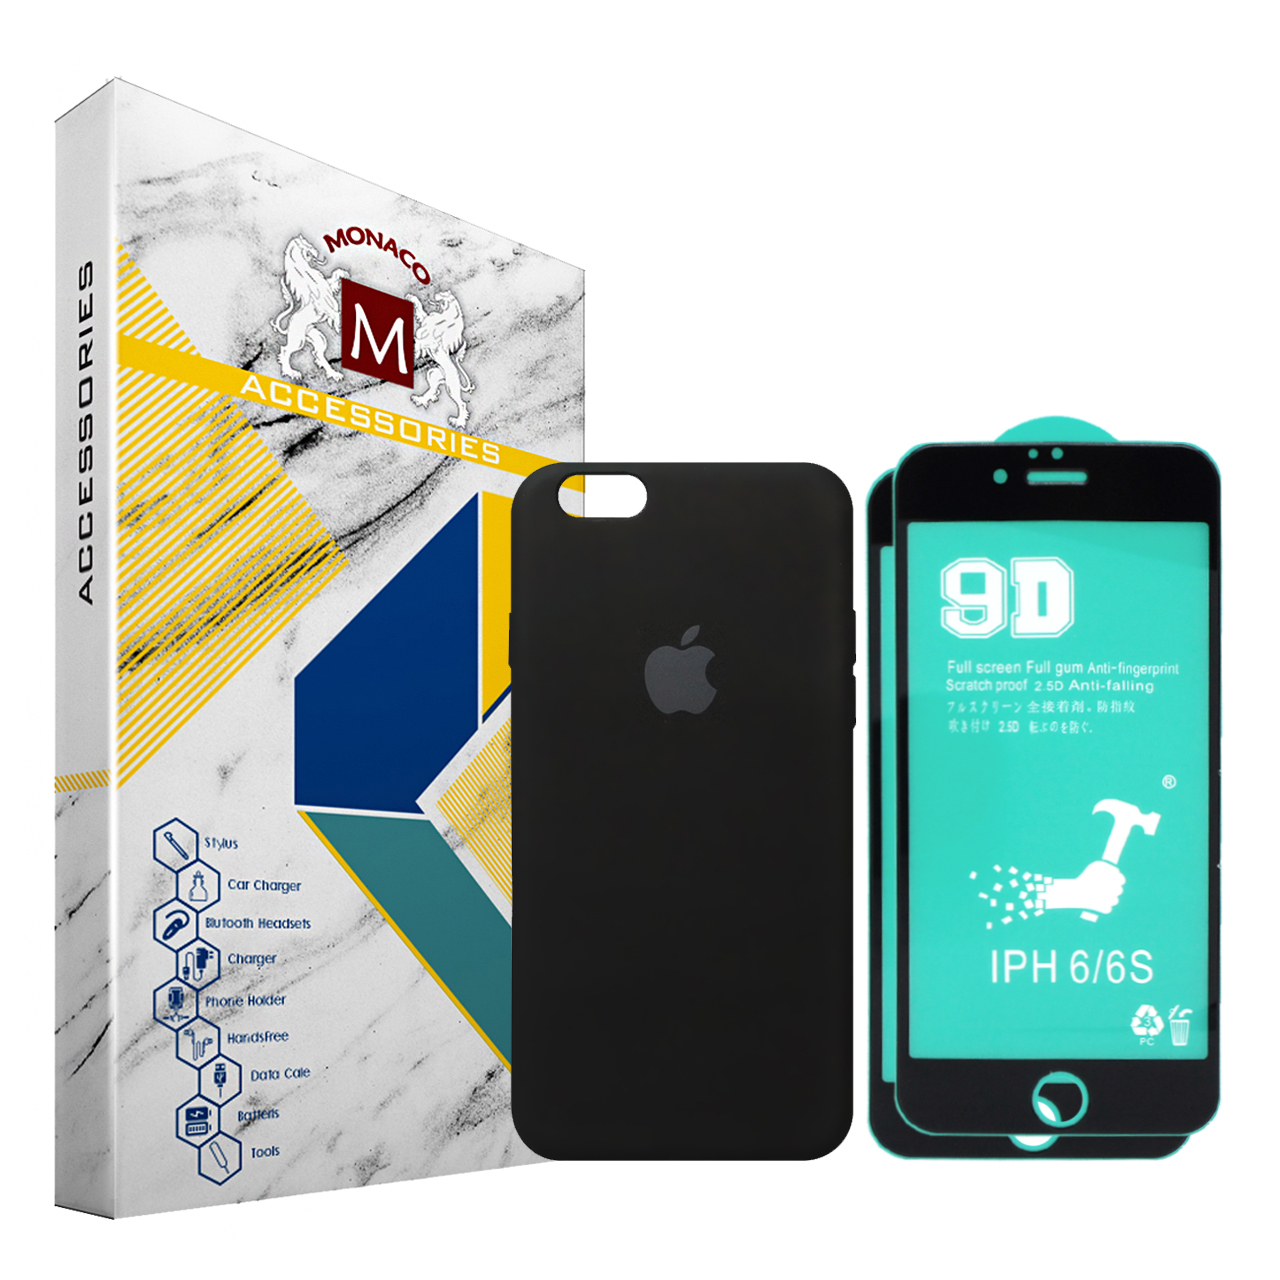 کاور موناکو مدل Si323 مناسب برای گوشی موبایل اپل iPhone 6 / 6S به همراه 2 عدد محافظ صفحه نمایش سرامیکی